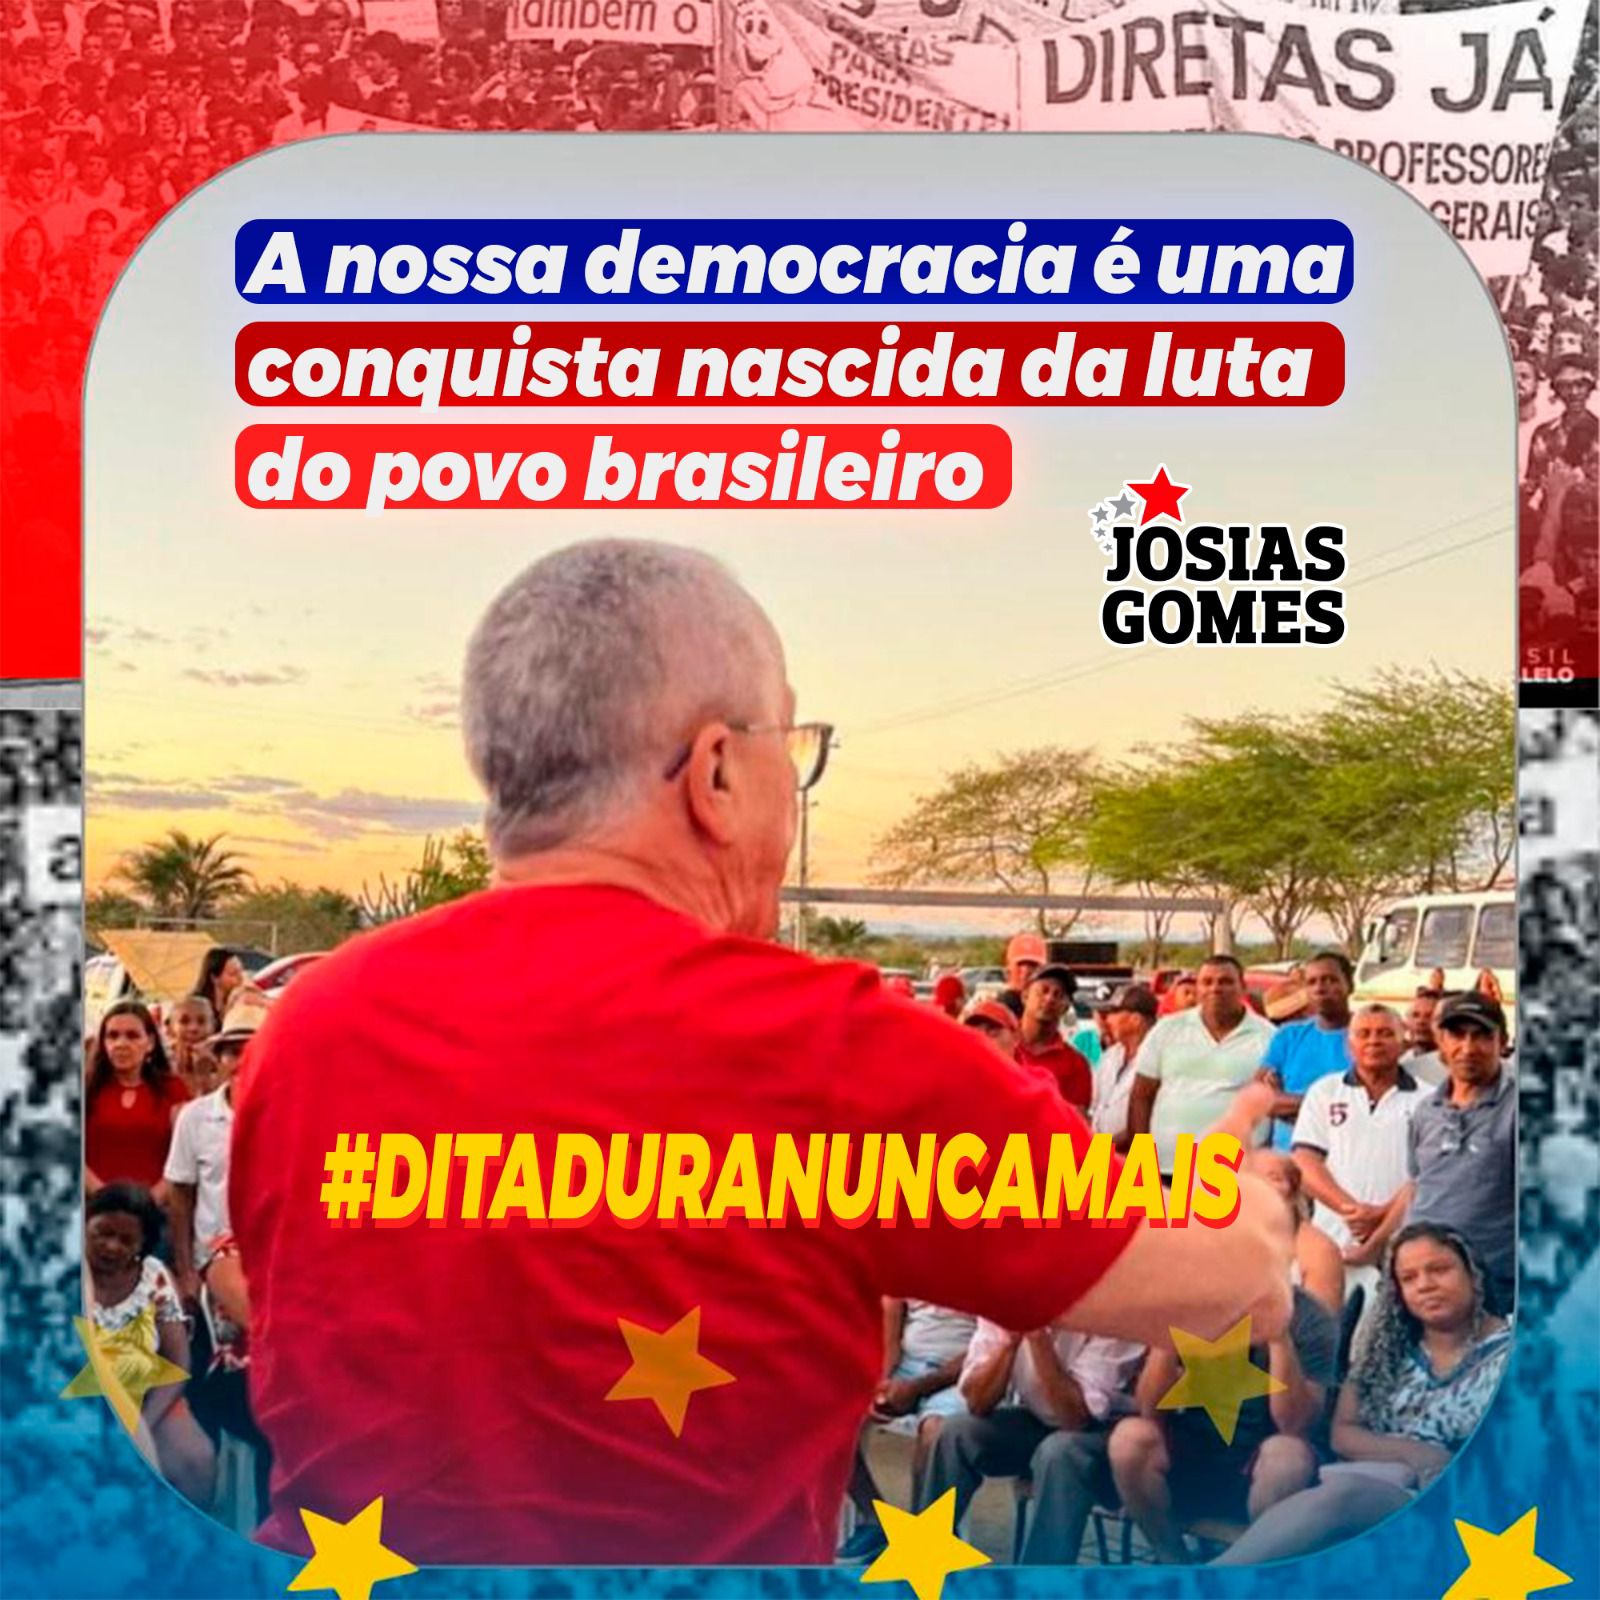 Ditadura Nunca Mais! DEMOCRACIA SEMPRE